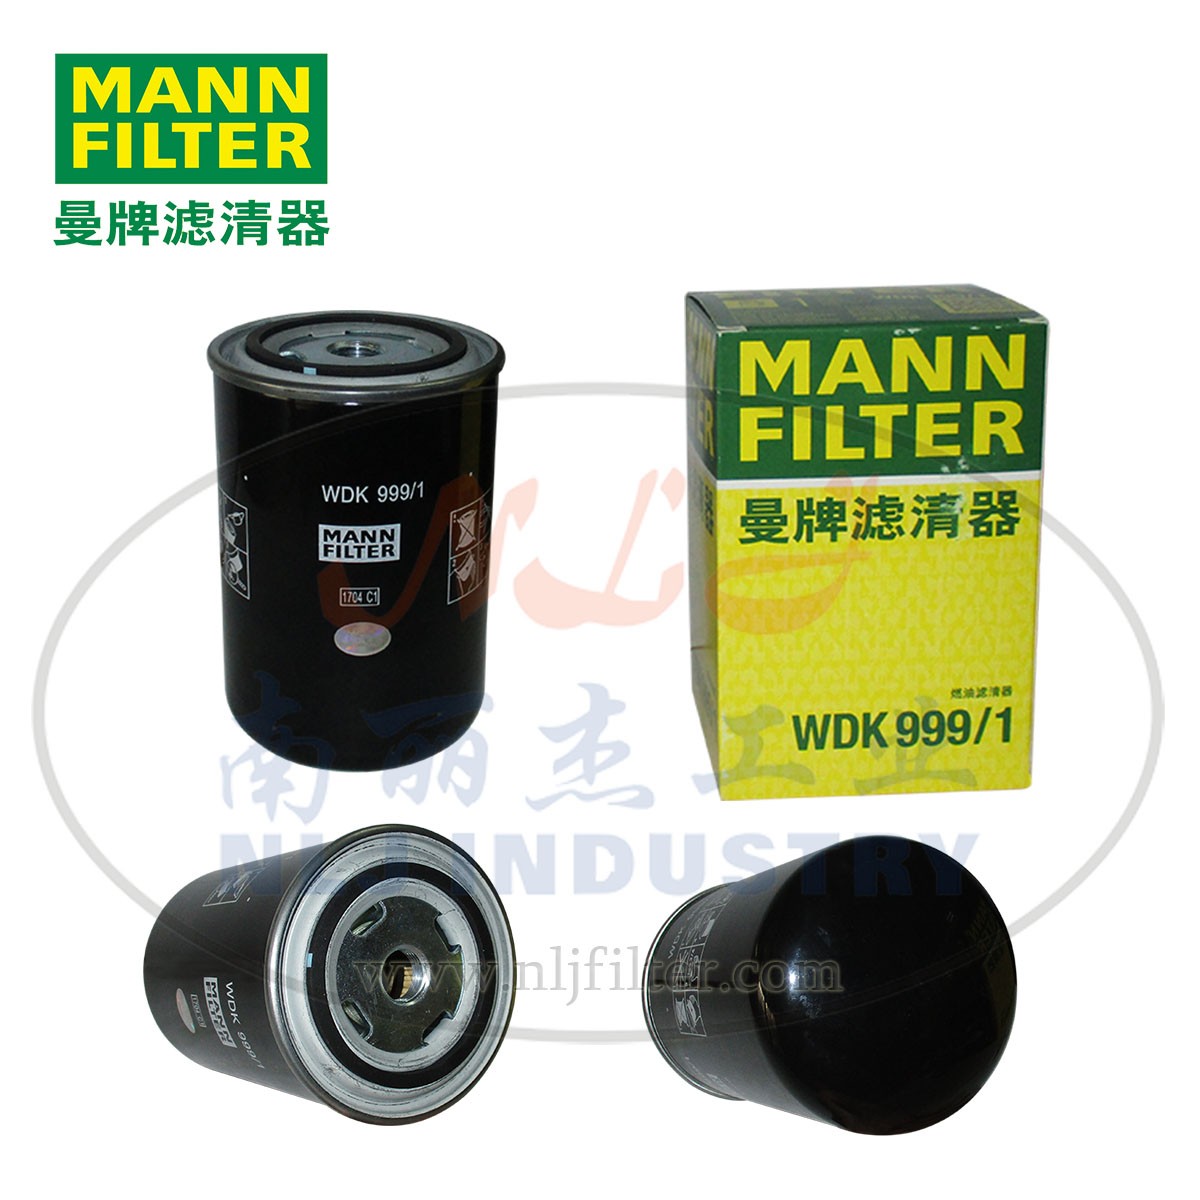 MANNFILTE曼牌滤清器燃滤WDK999/1 燃油滤清器 燃油滤芯生产厂家